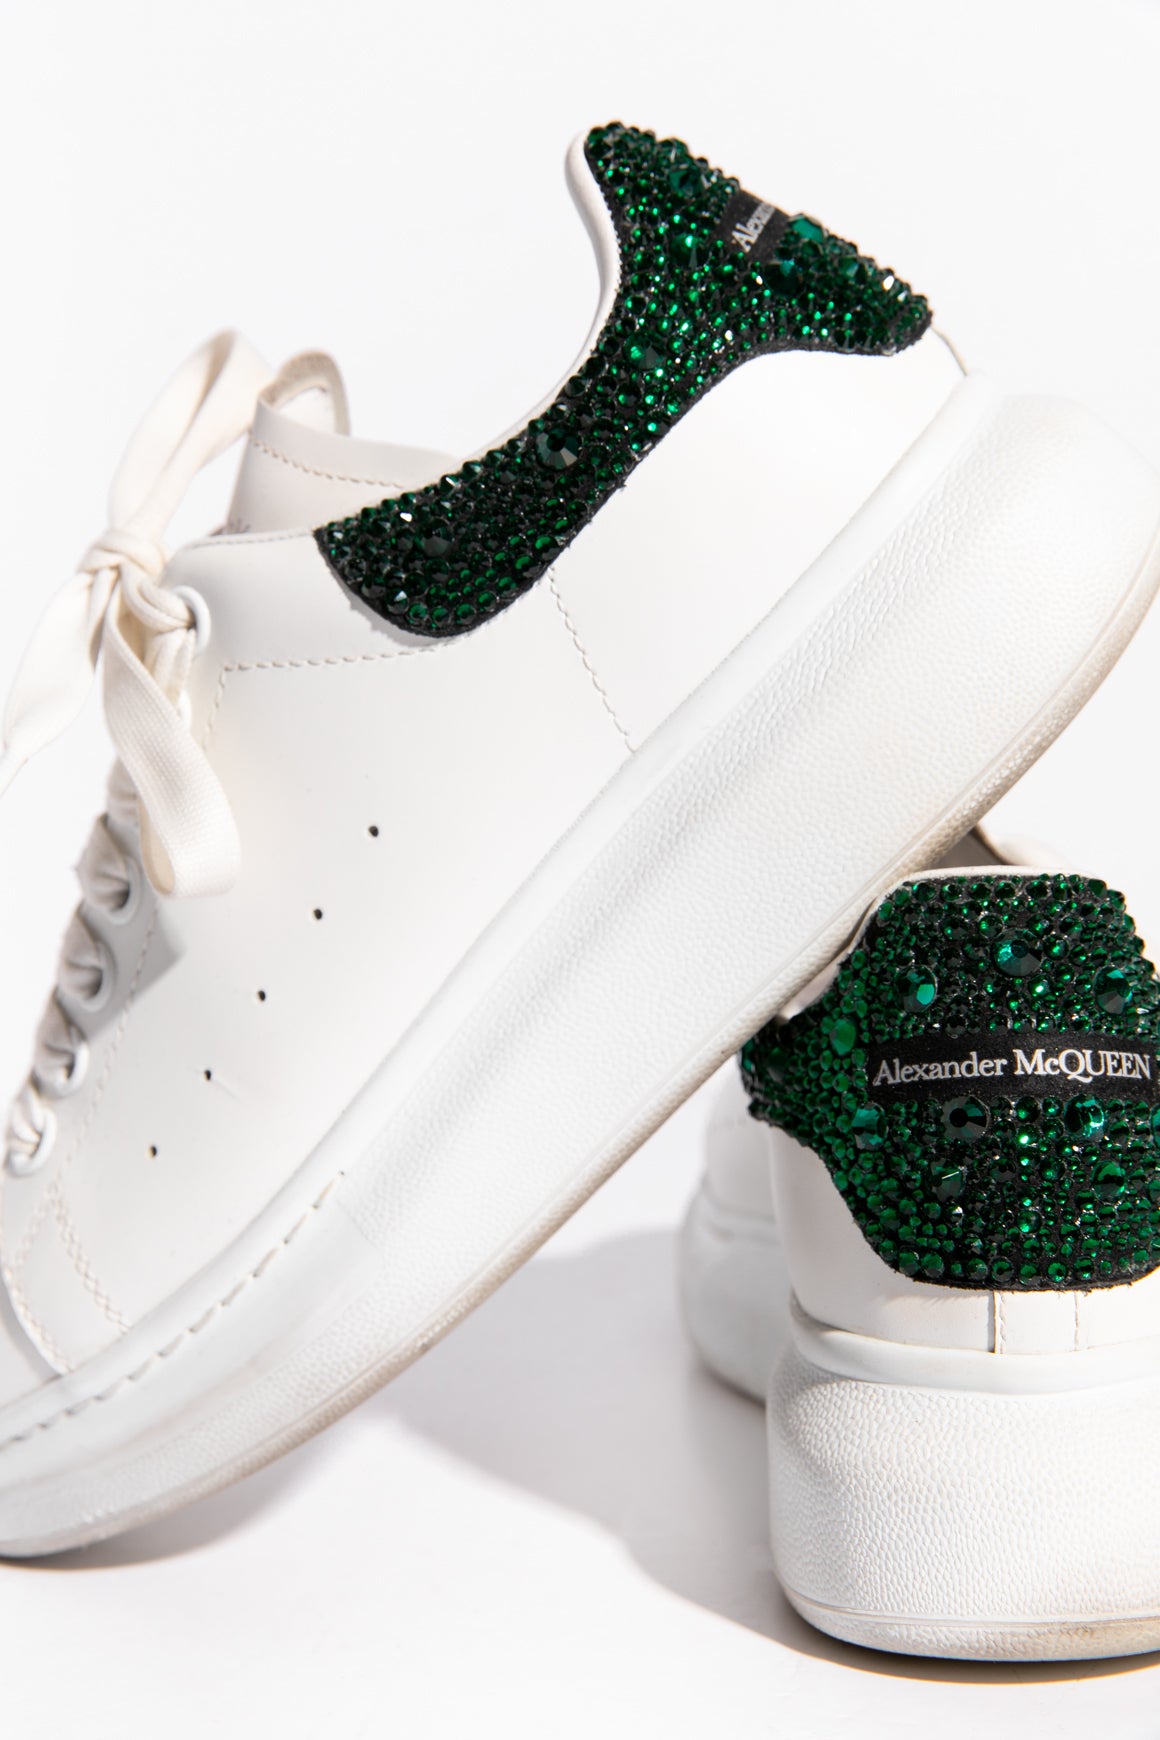 ALEXANDER MCQUEEN White & Green Sneakers (Sz. 38)